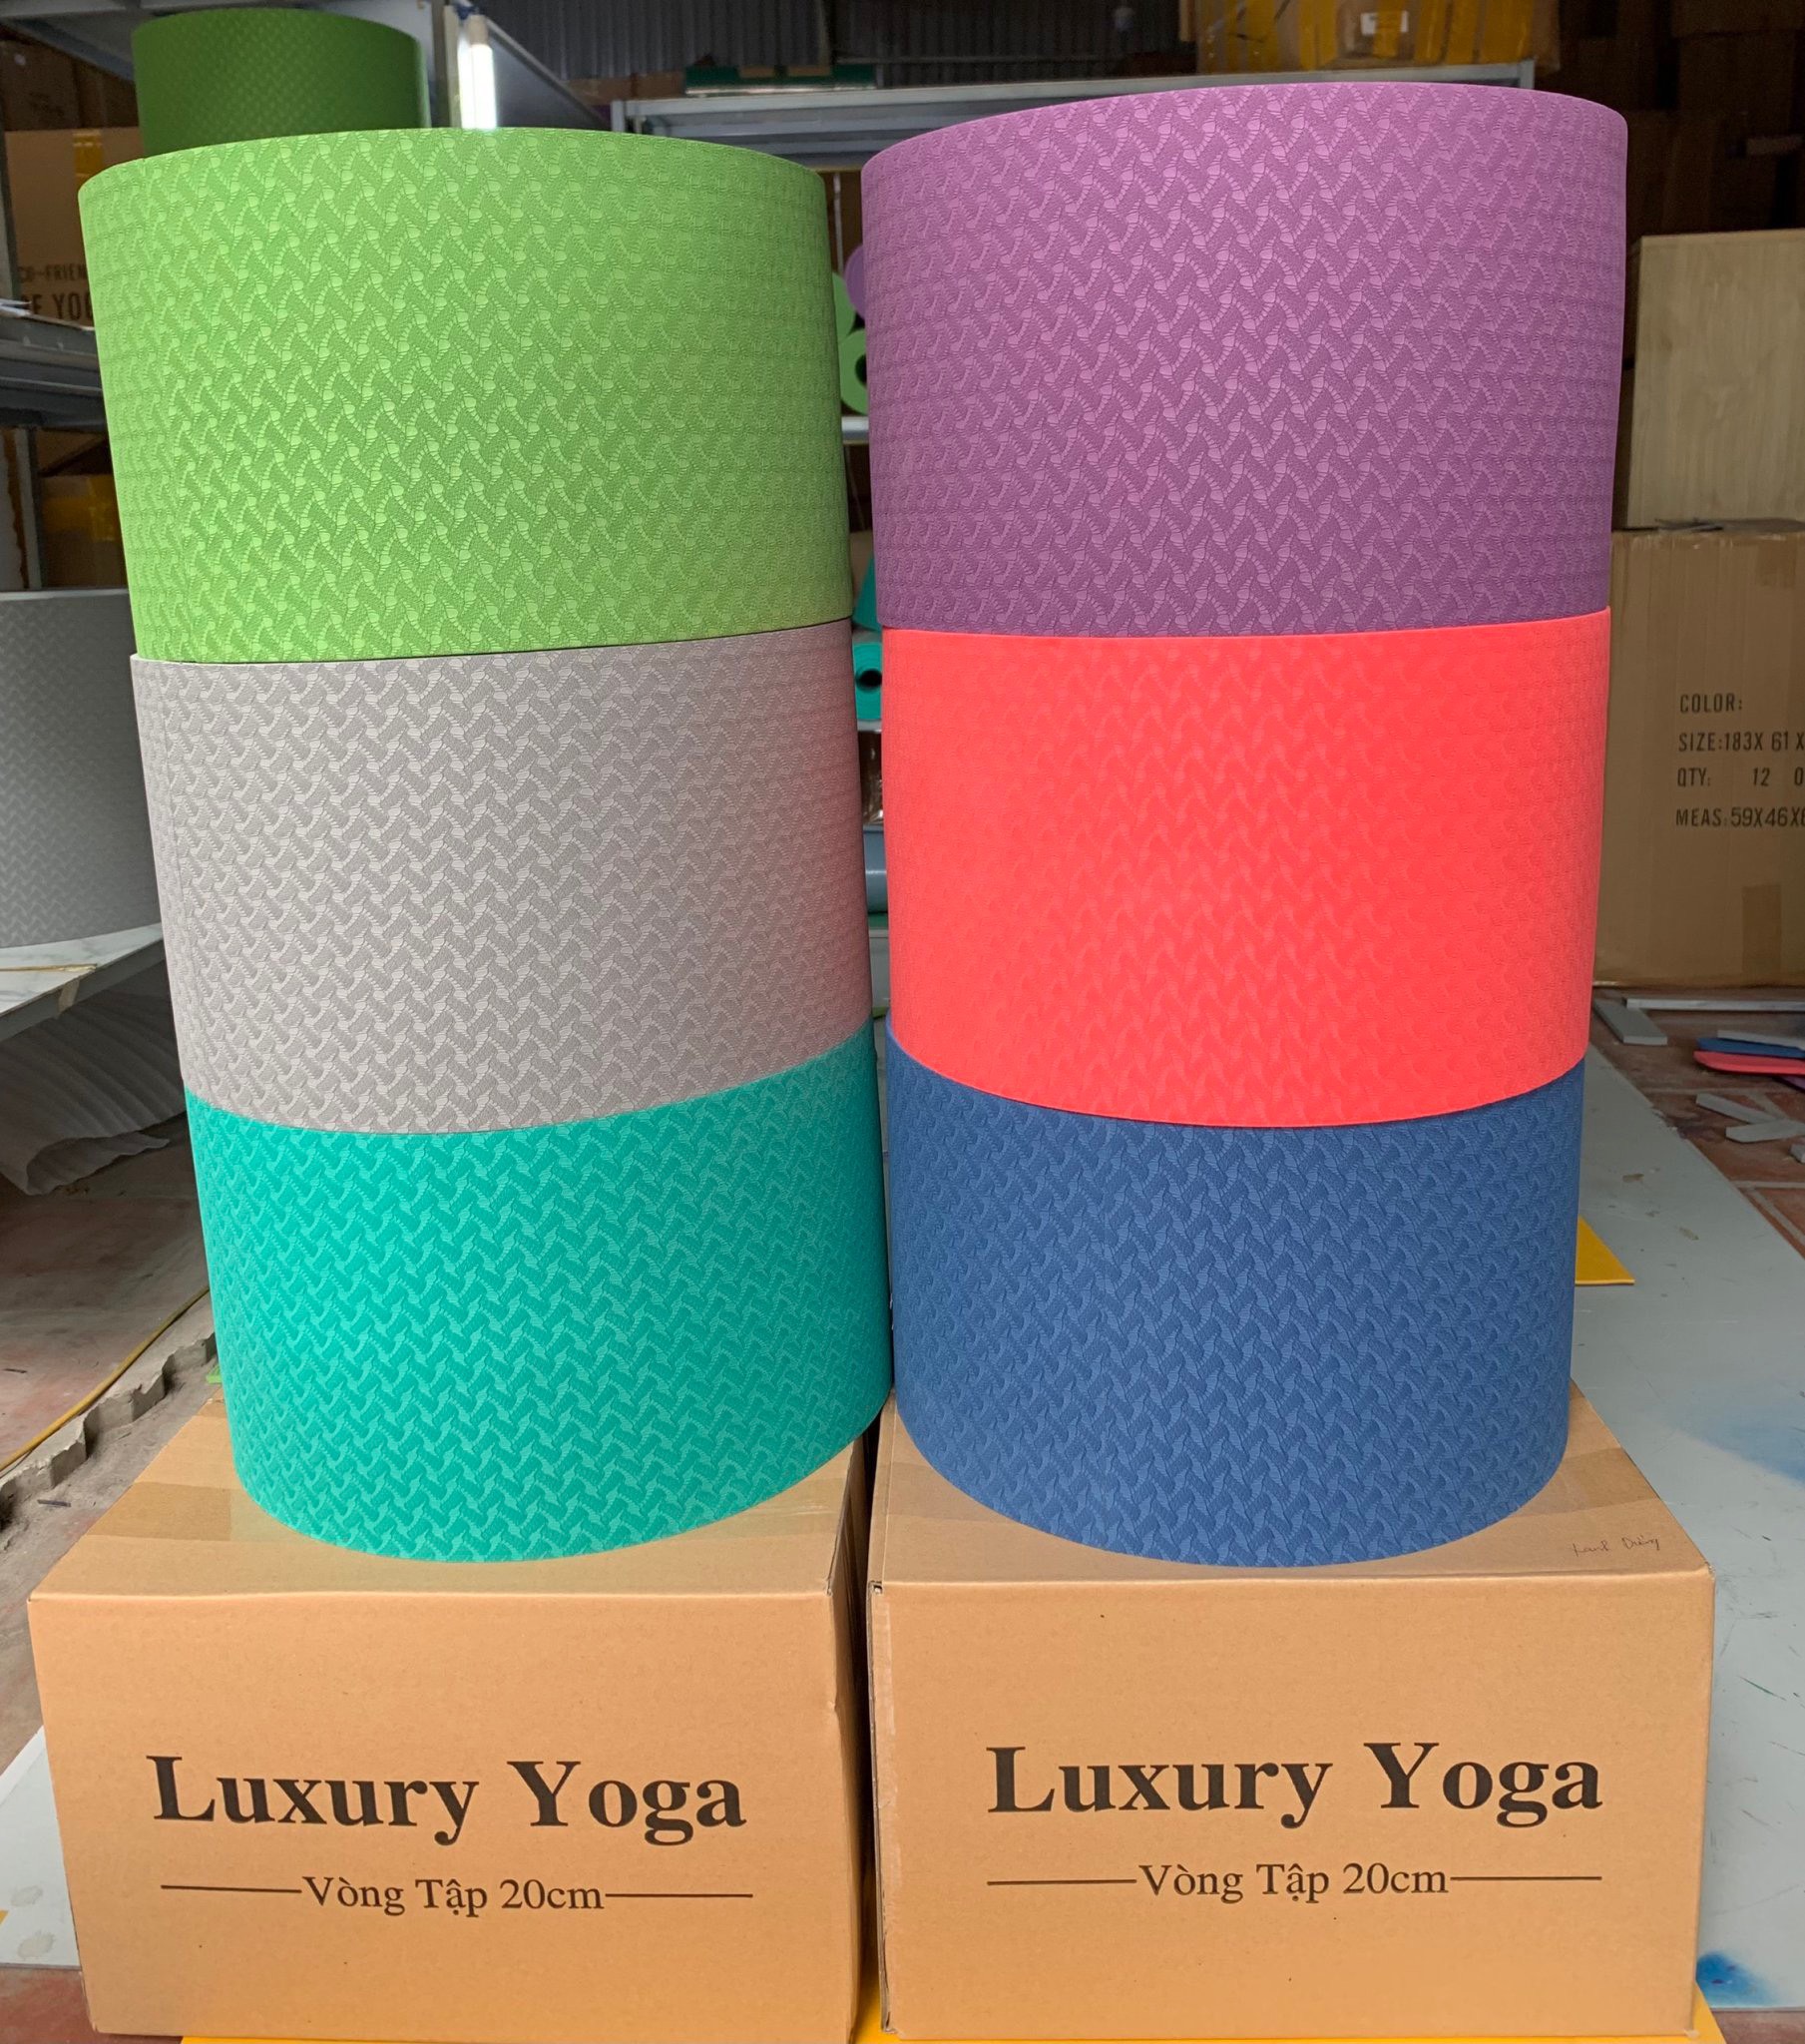 Vòng tập Yoga bản rộng 33 x 20cm nhựa ABS cao cấp không gai , chịu lực 200kg hỗ trợ tập các tư thế khó trong Yoga ,  bề mặt TPE 8mm , phù hợp tập ở nhà và các CLB trung tâm Yoga